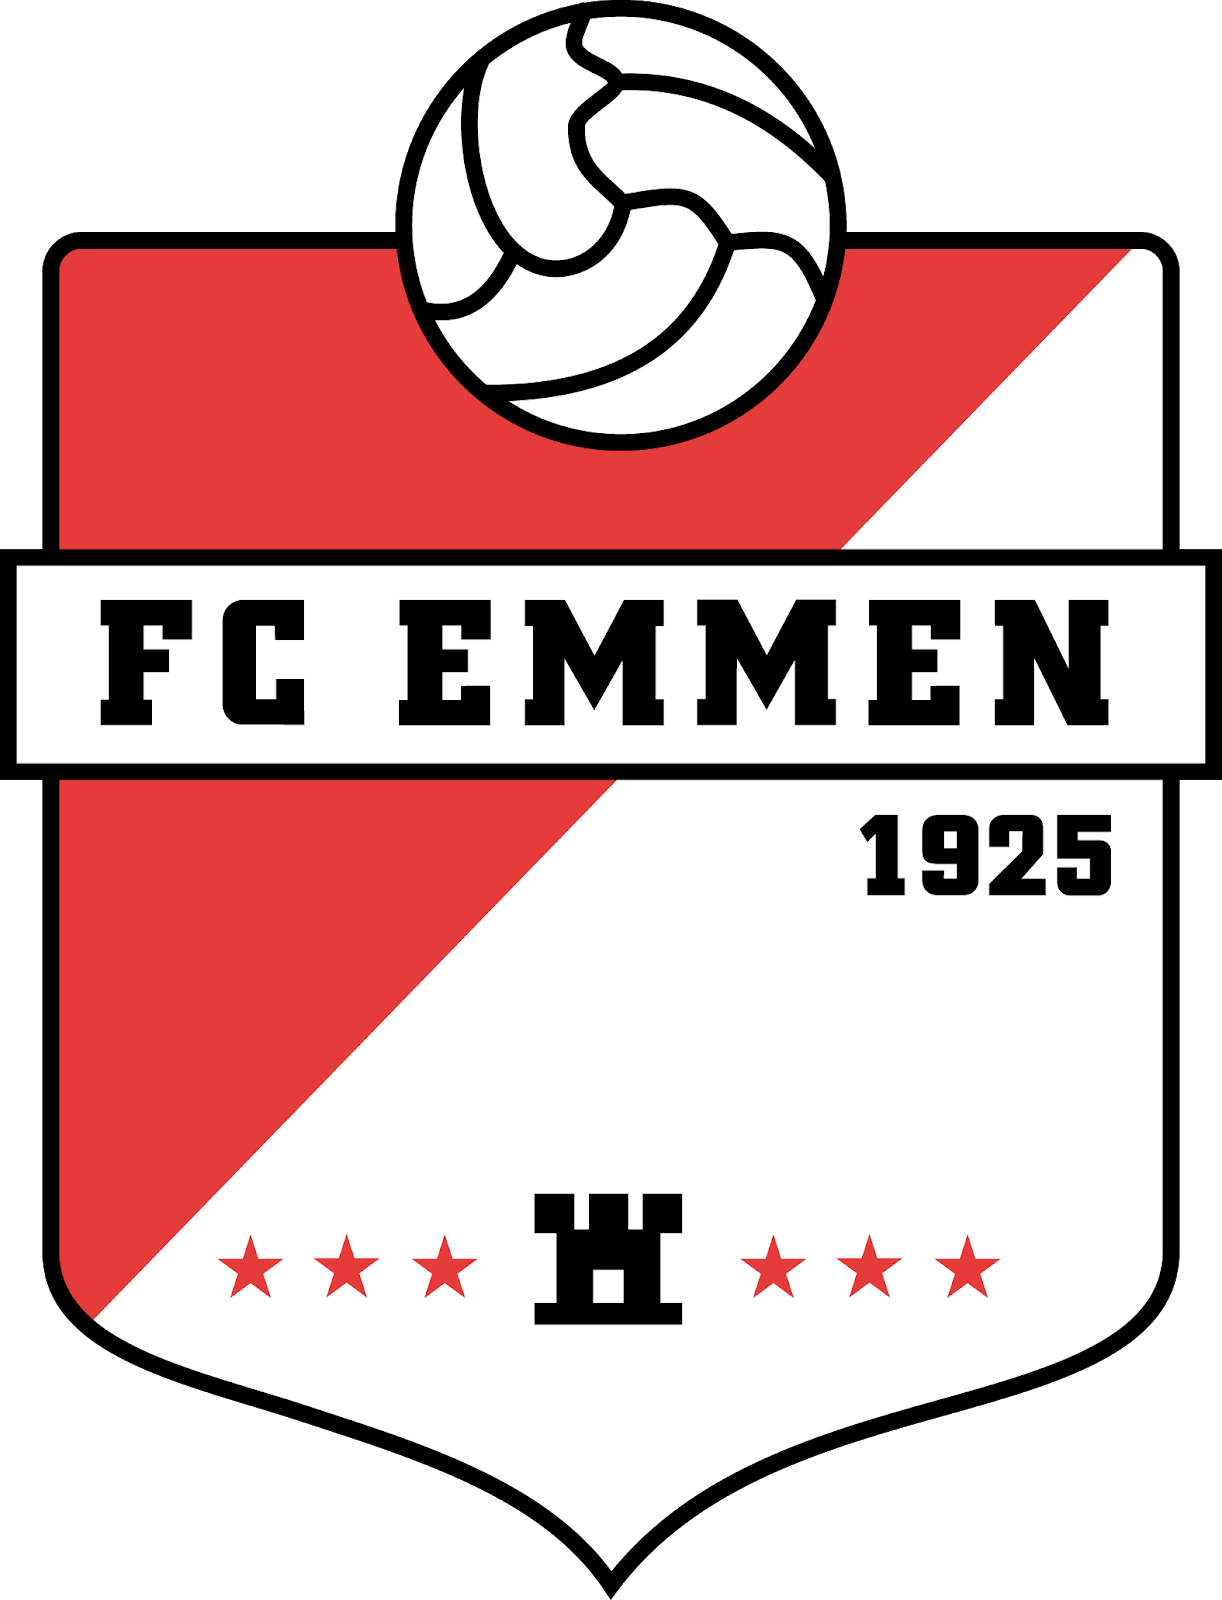 download logo fc emmen nederland football vector color free - el fonts